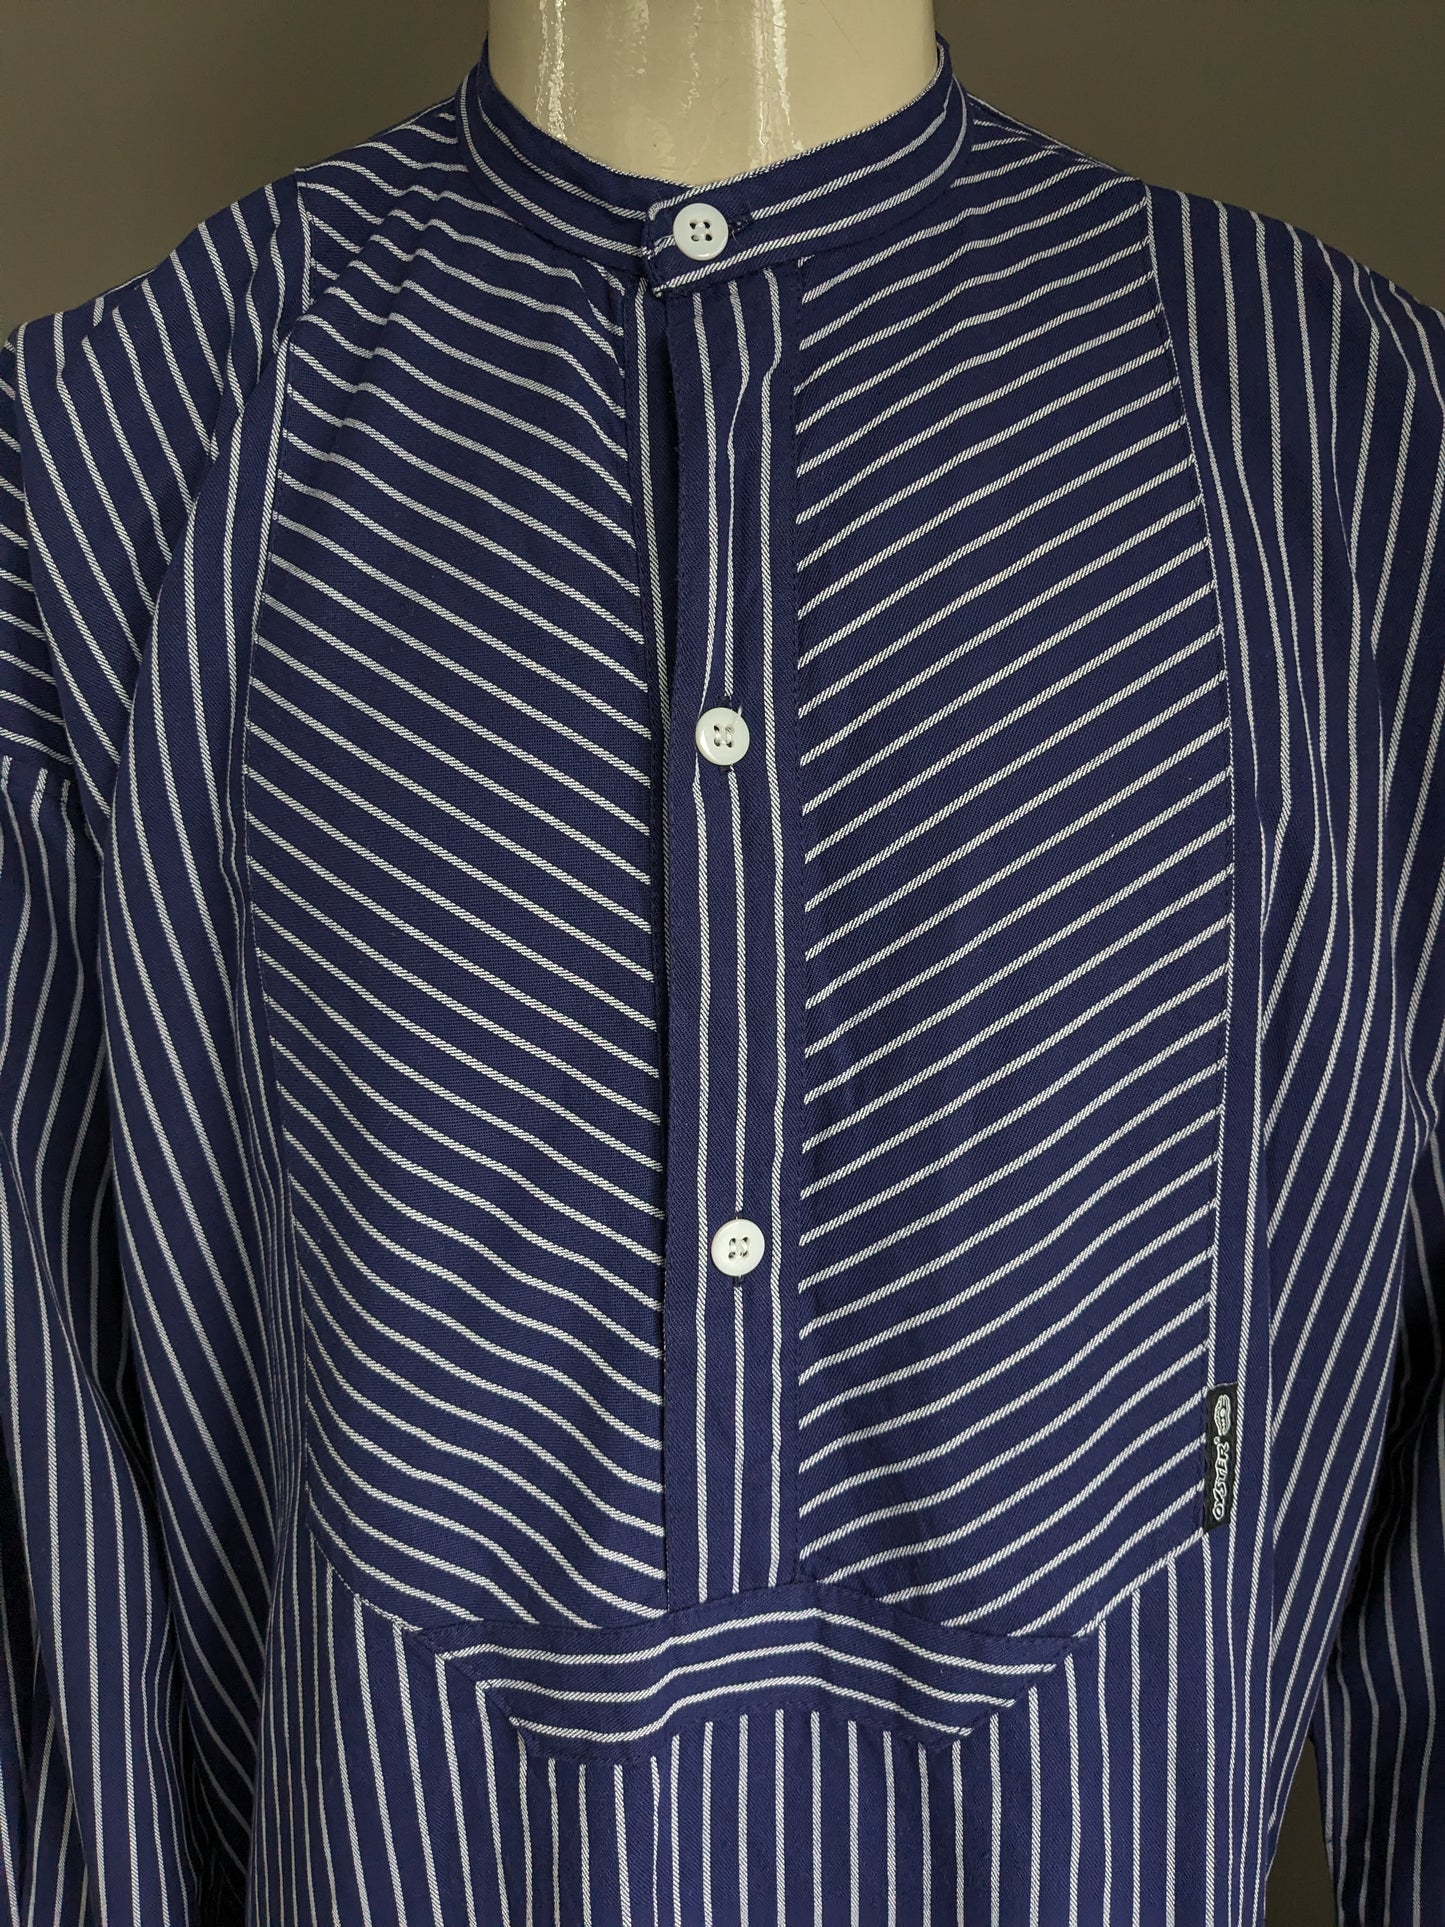 Magion / camicia da polo Duster vintage con colletto rialzato / agricoltori / MAO. Strisce bianche blu. Dimensione XXL / 2XL